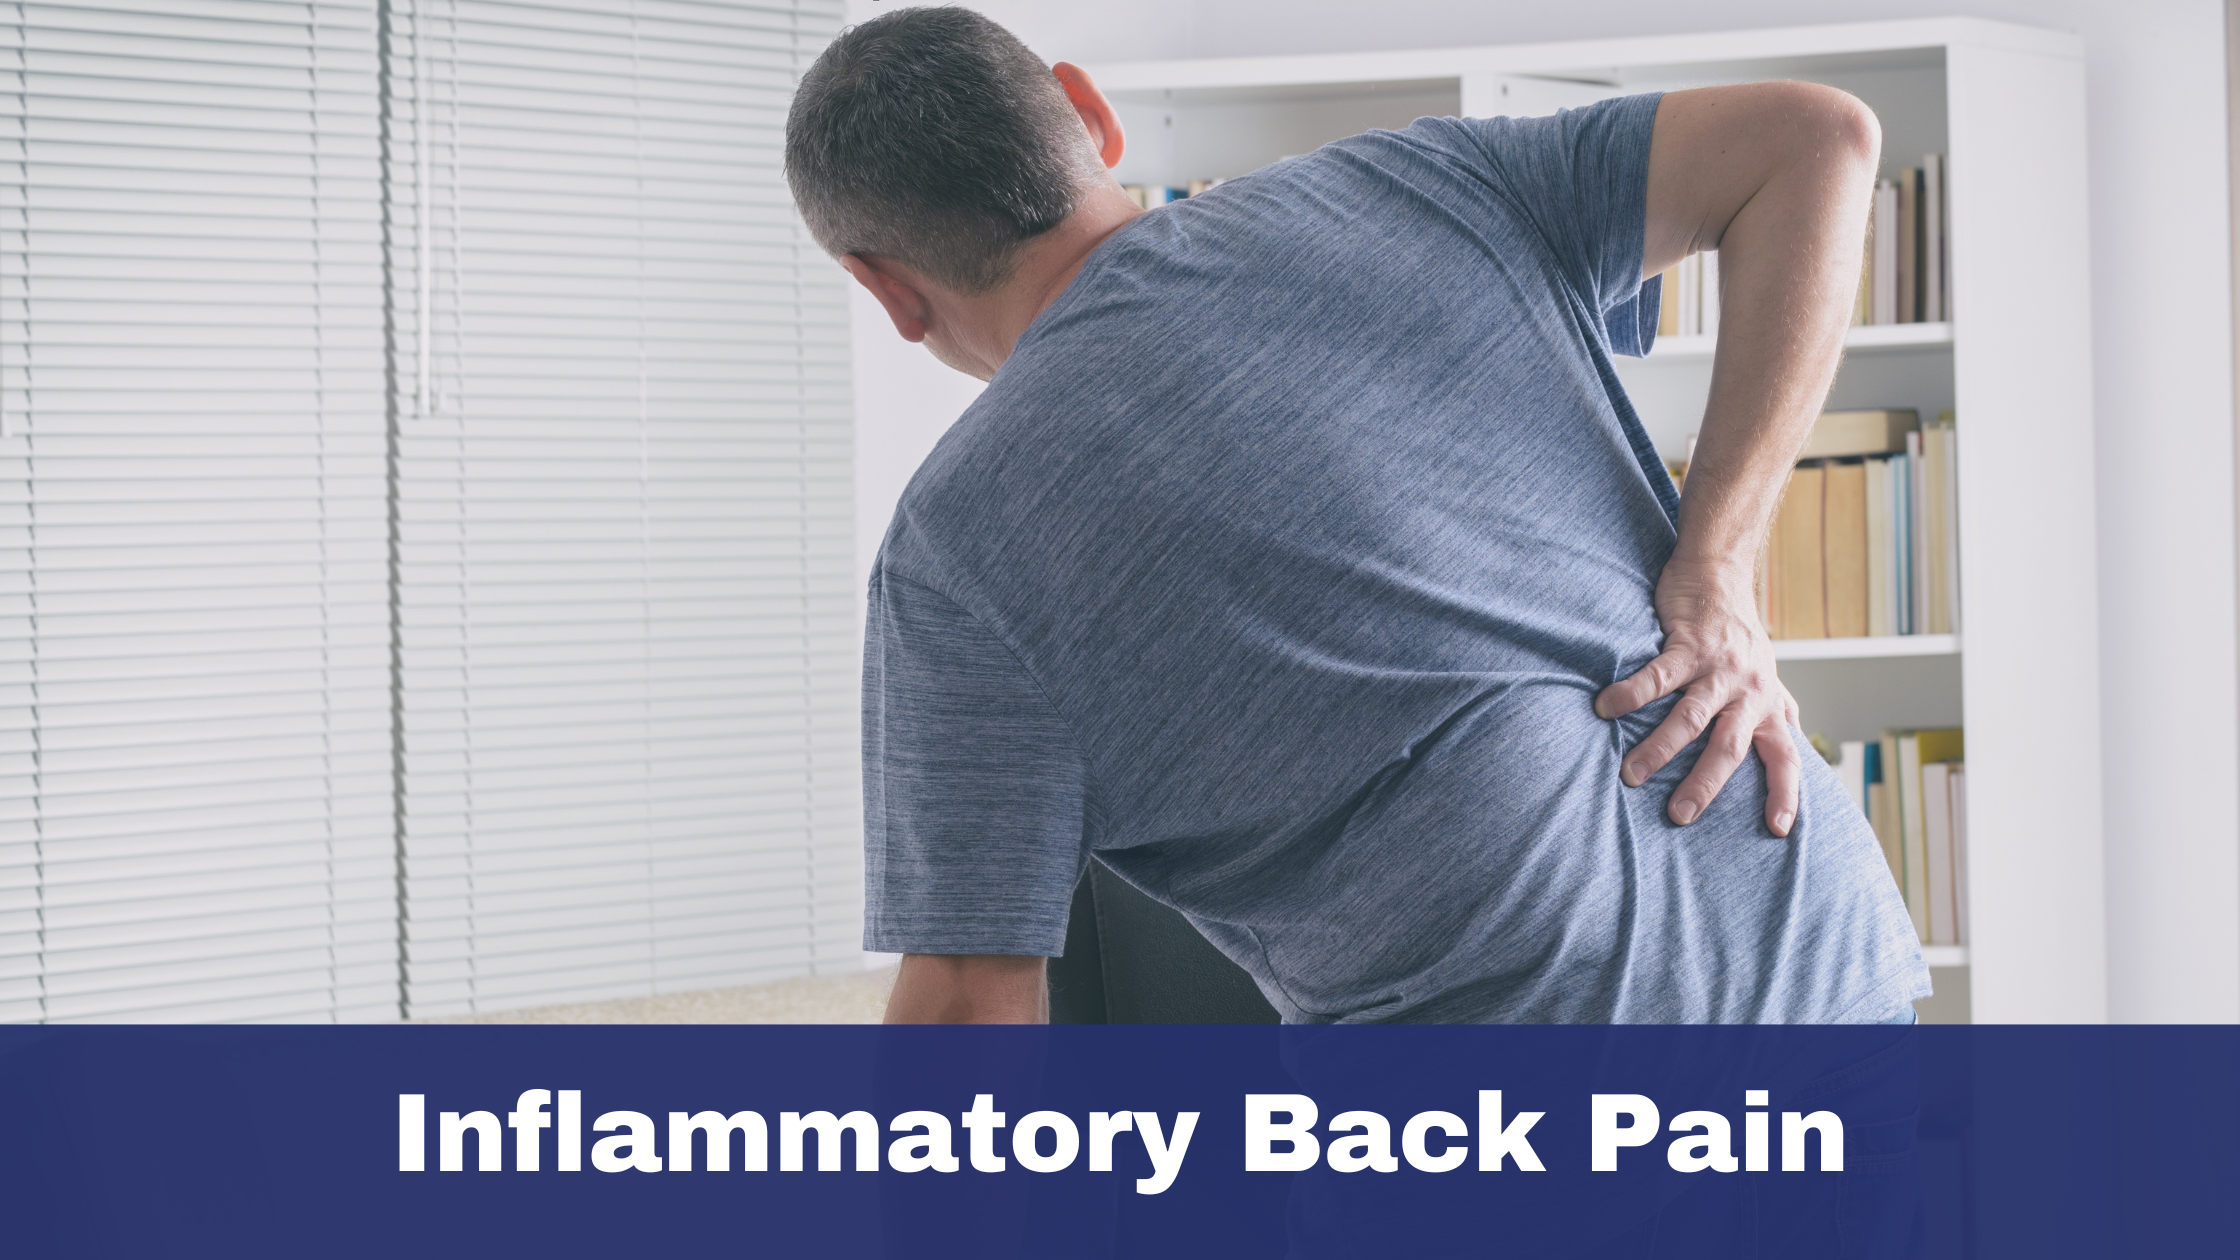 Inflammatory back pain